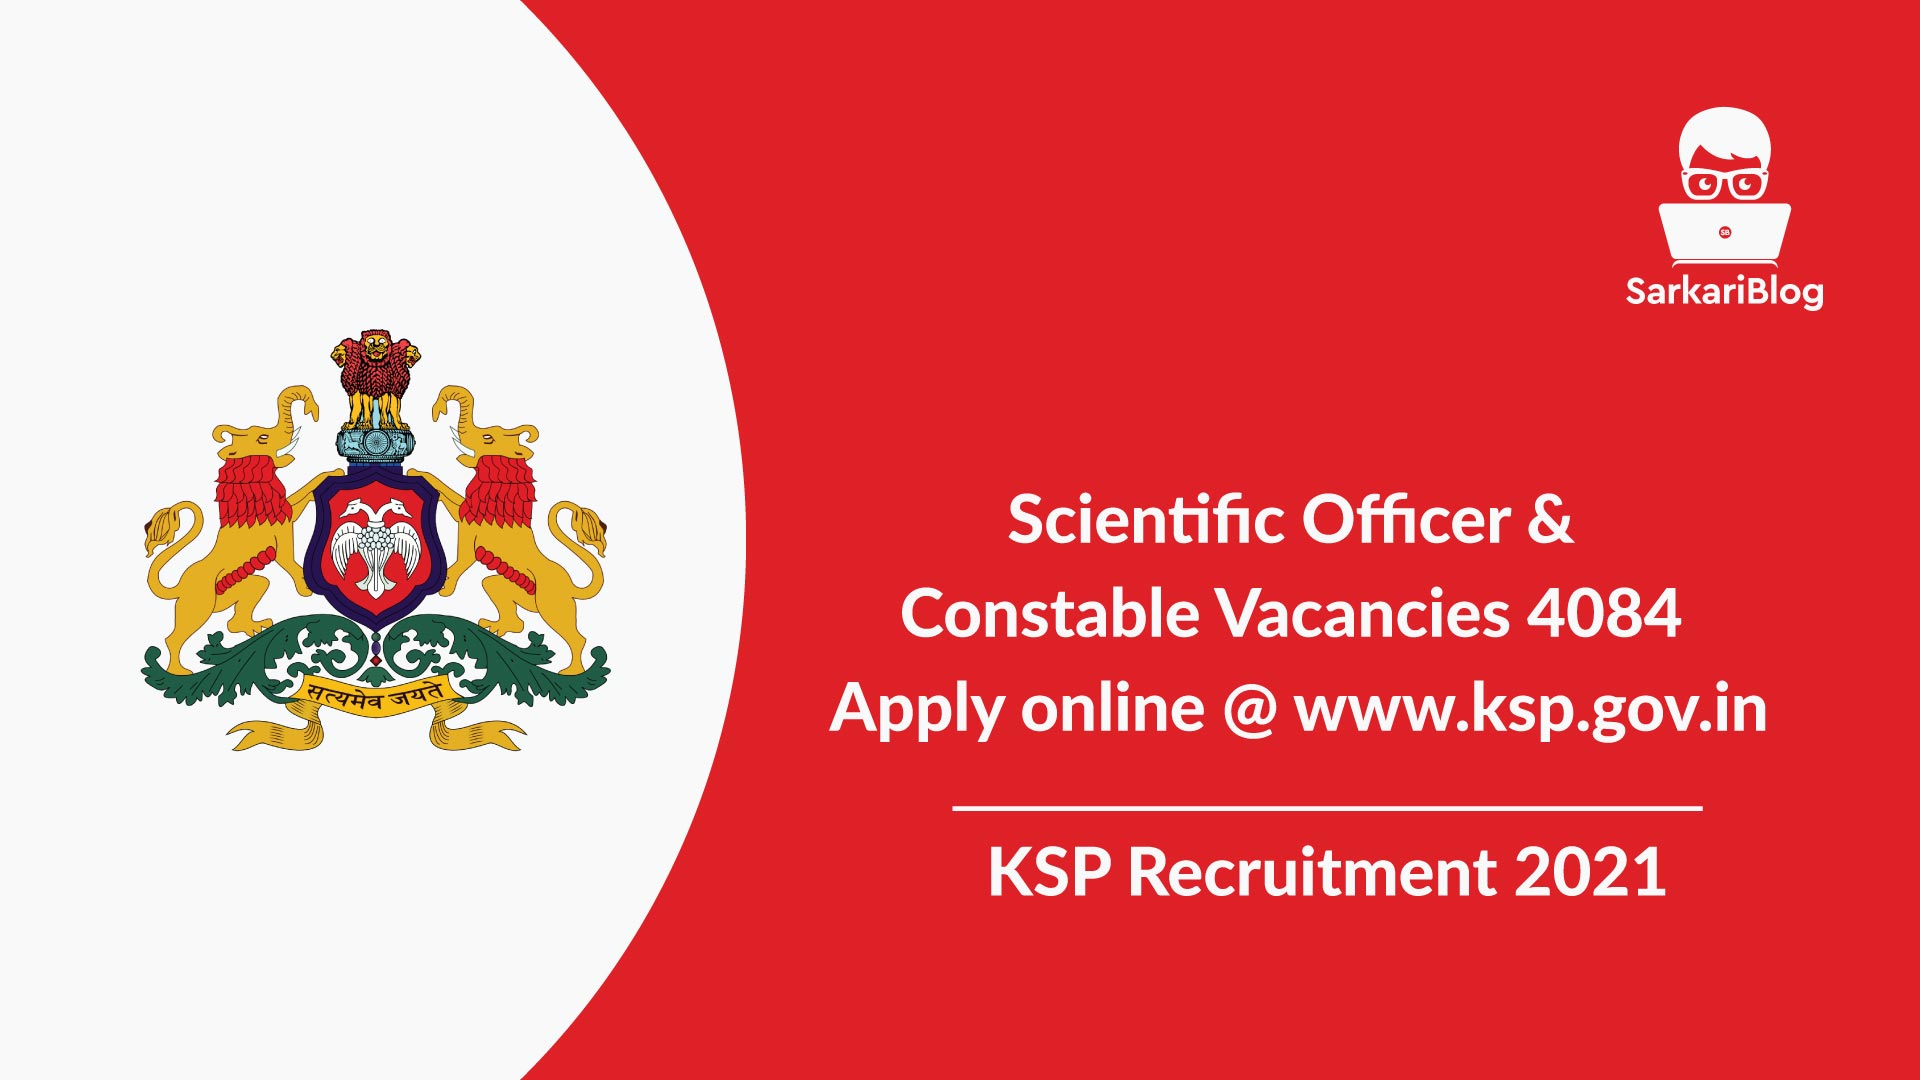 KSP Recruitment 2021, Scientific Officer and Constable Vacancies 4084 Apply online @ www.ksp.gov.in